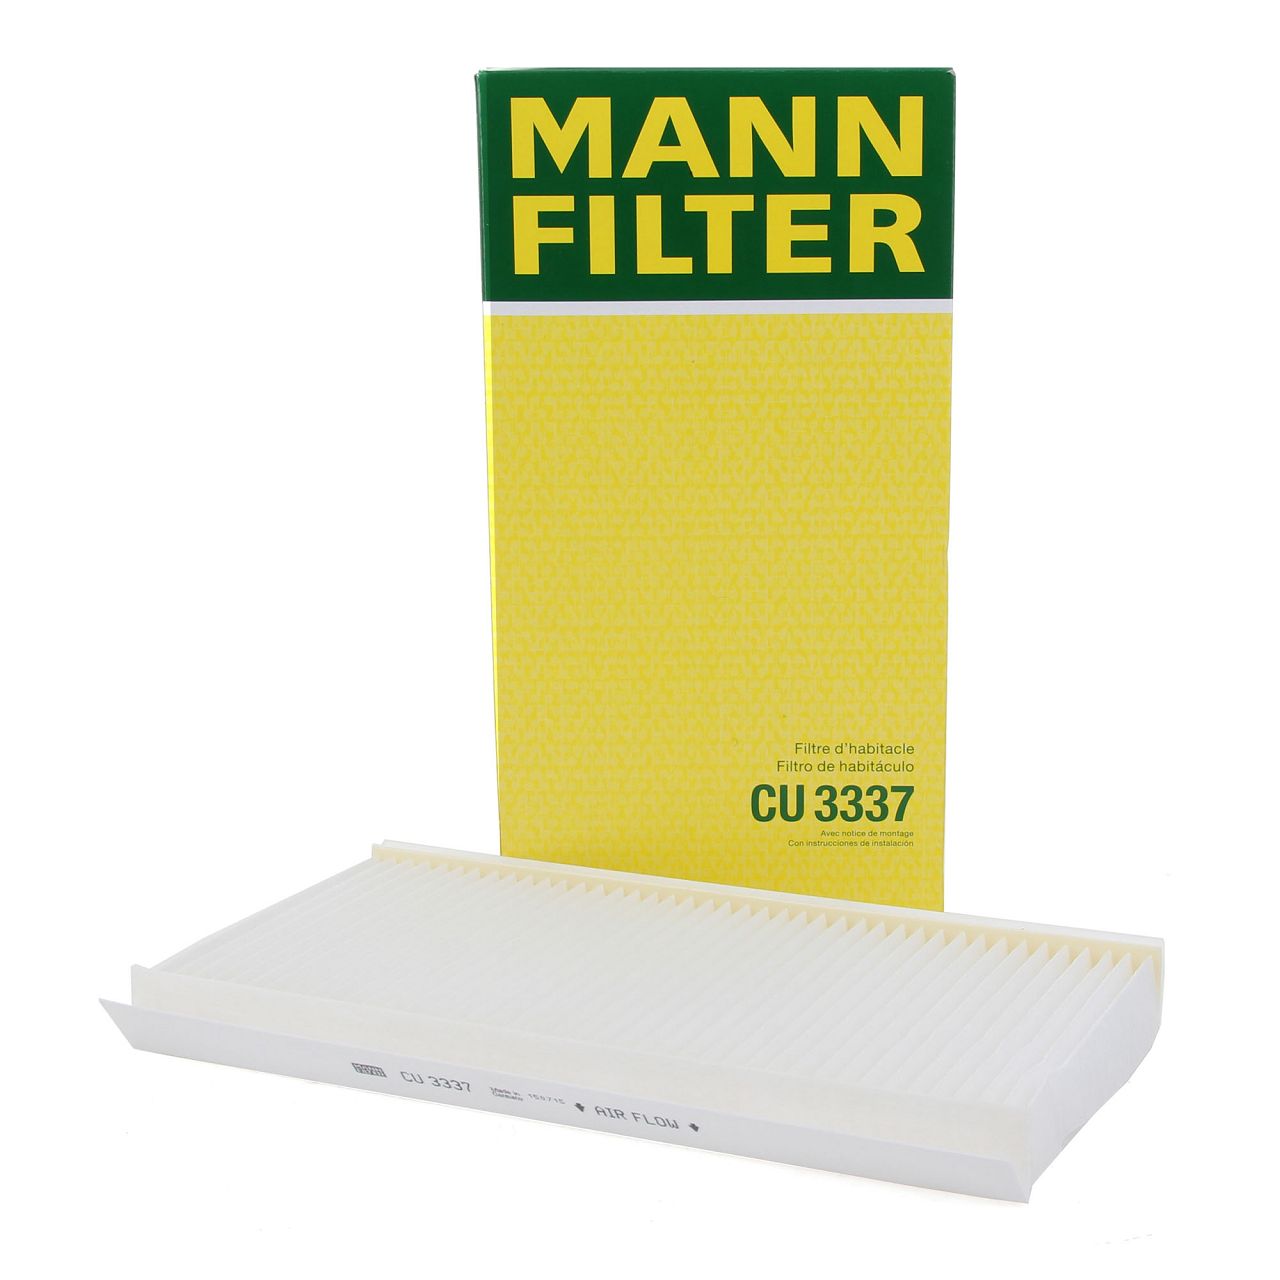 CU 6724 MANN-FILTER Innenraumfilter Partikelfilter, 660 mm x 95 mm